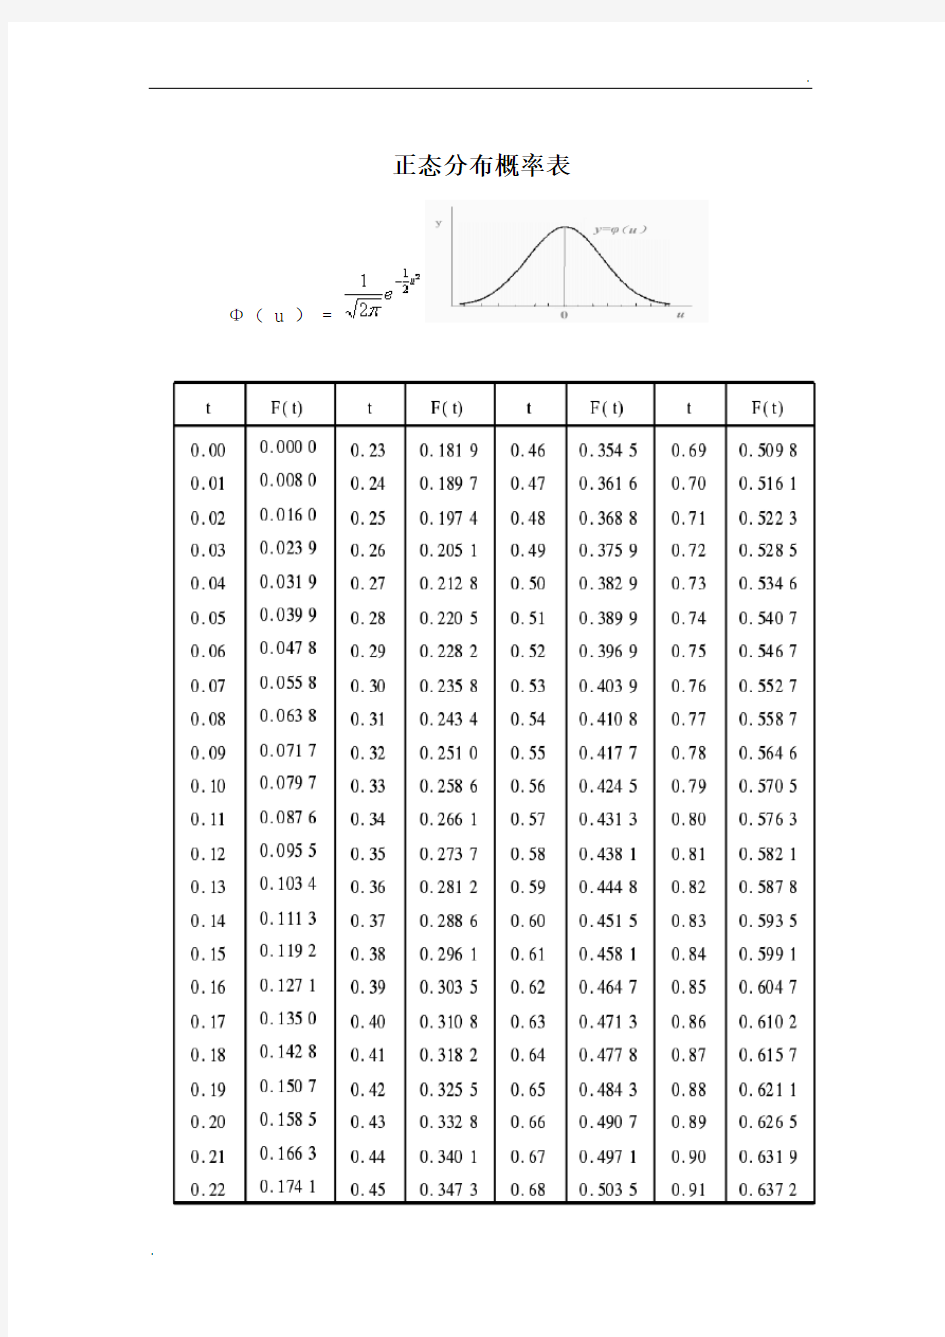 标准正态分布表 (2)